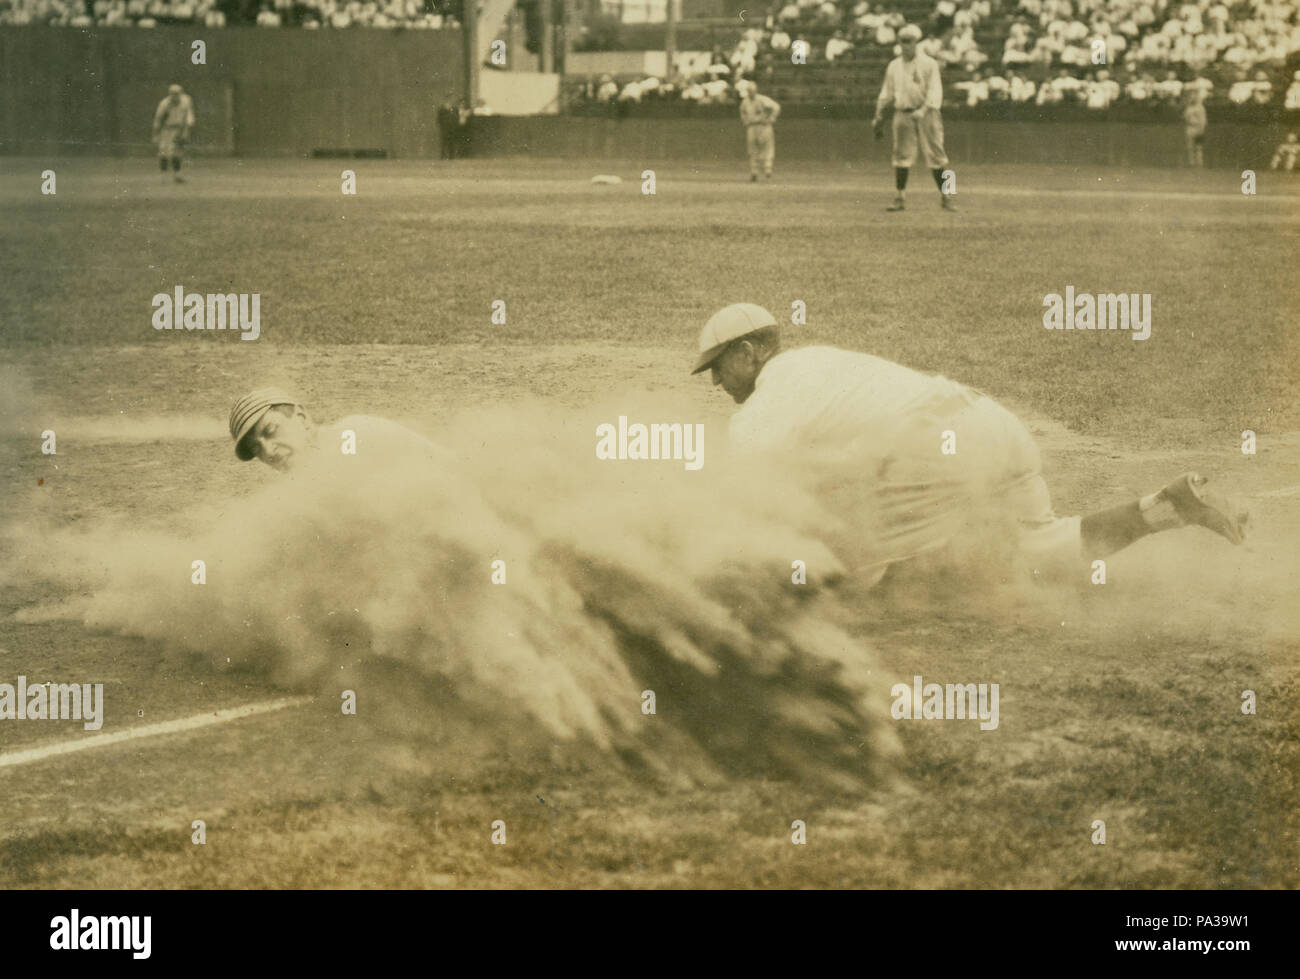 Jugador de béisbol 186 deslizándose en tercera base en St. Louis Terriers (liga federal) juego Foto de stock